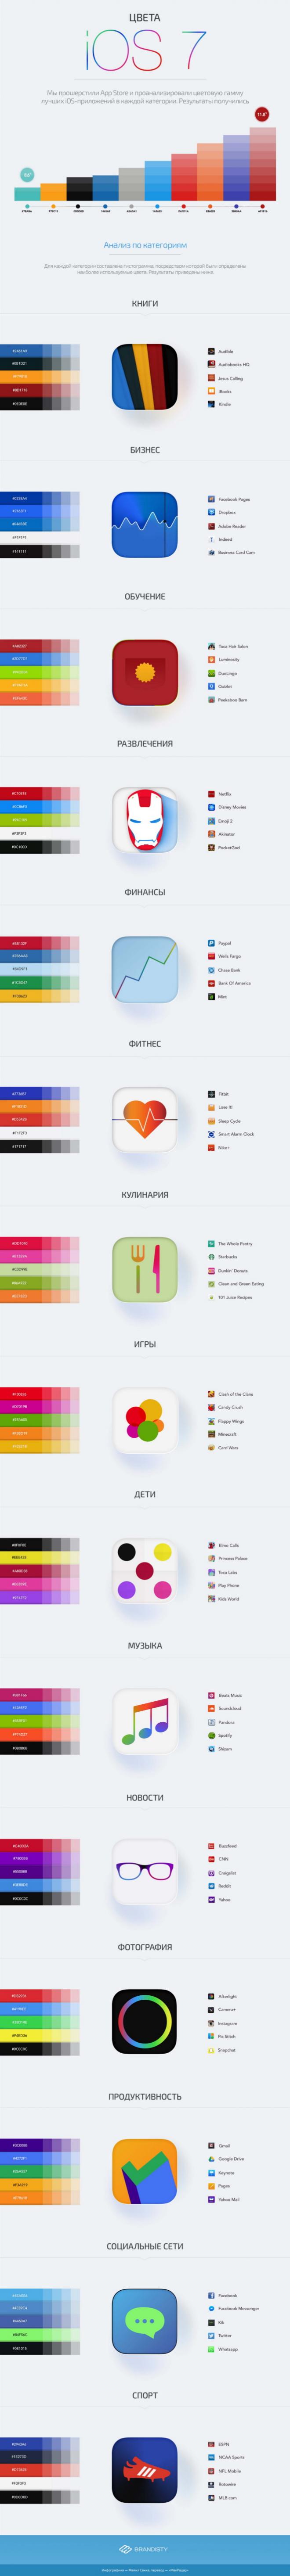 Инфографика о цветах в iOS 7